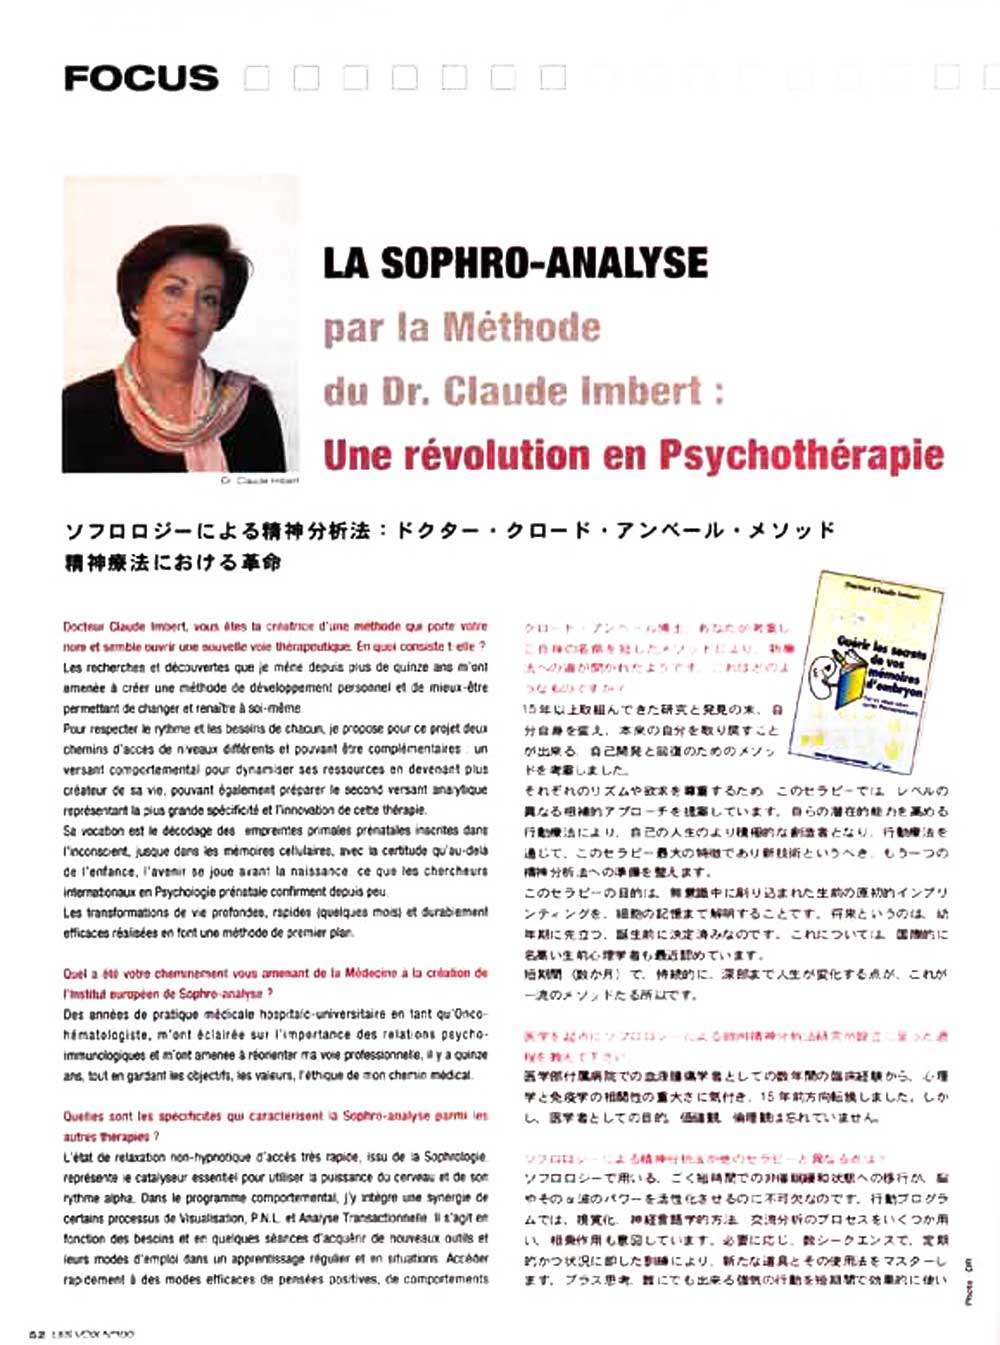 Les voix - La sophro-analyse par la méthode du Dr Claude Imbert